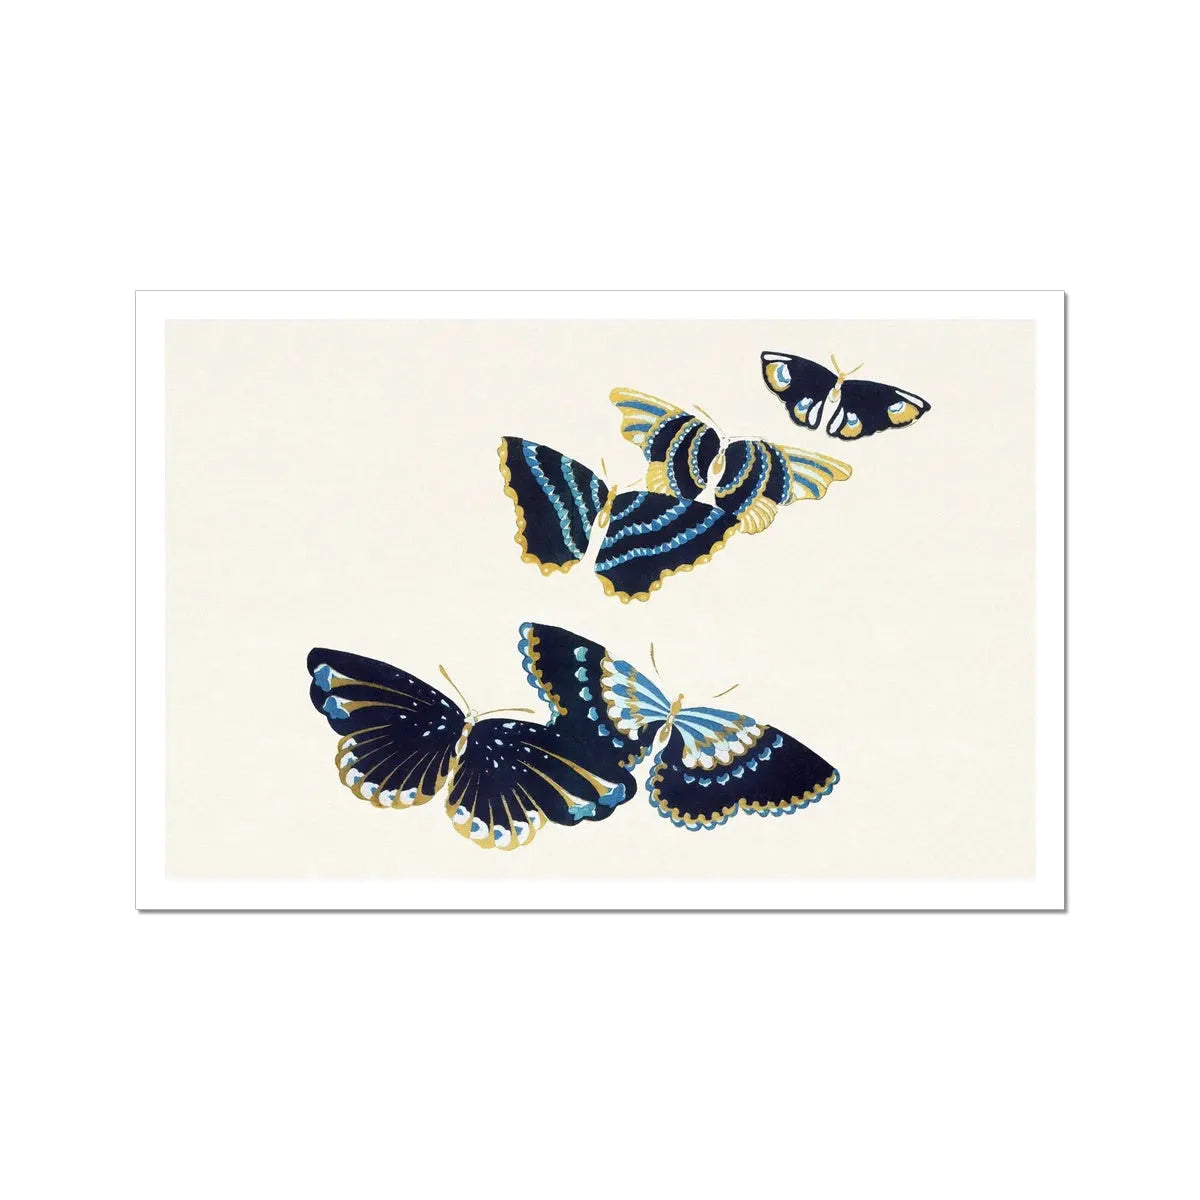 Japanese Butterflies In Blue Too By Kamisaka Sekka Fine Art Print - 24’x16’ - Posters Prints & Visual Artwork